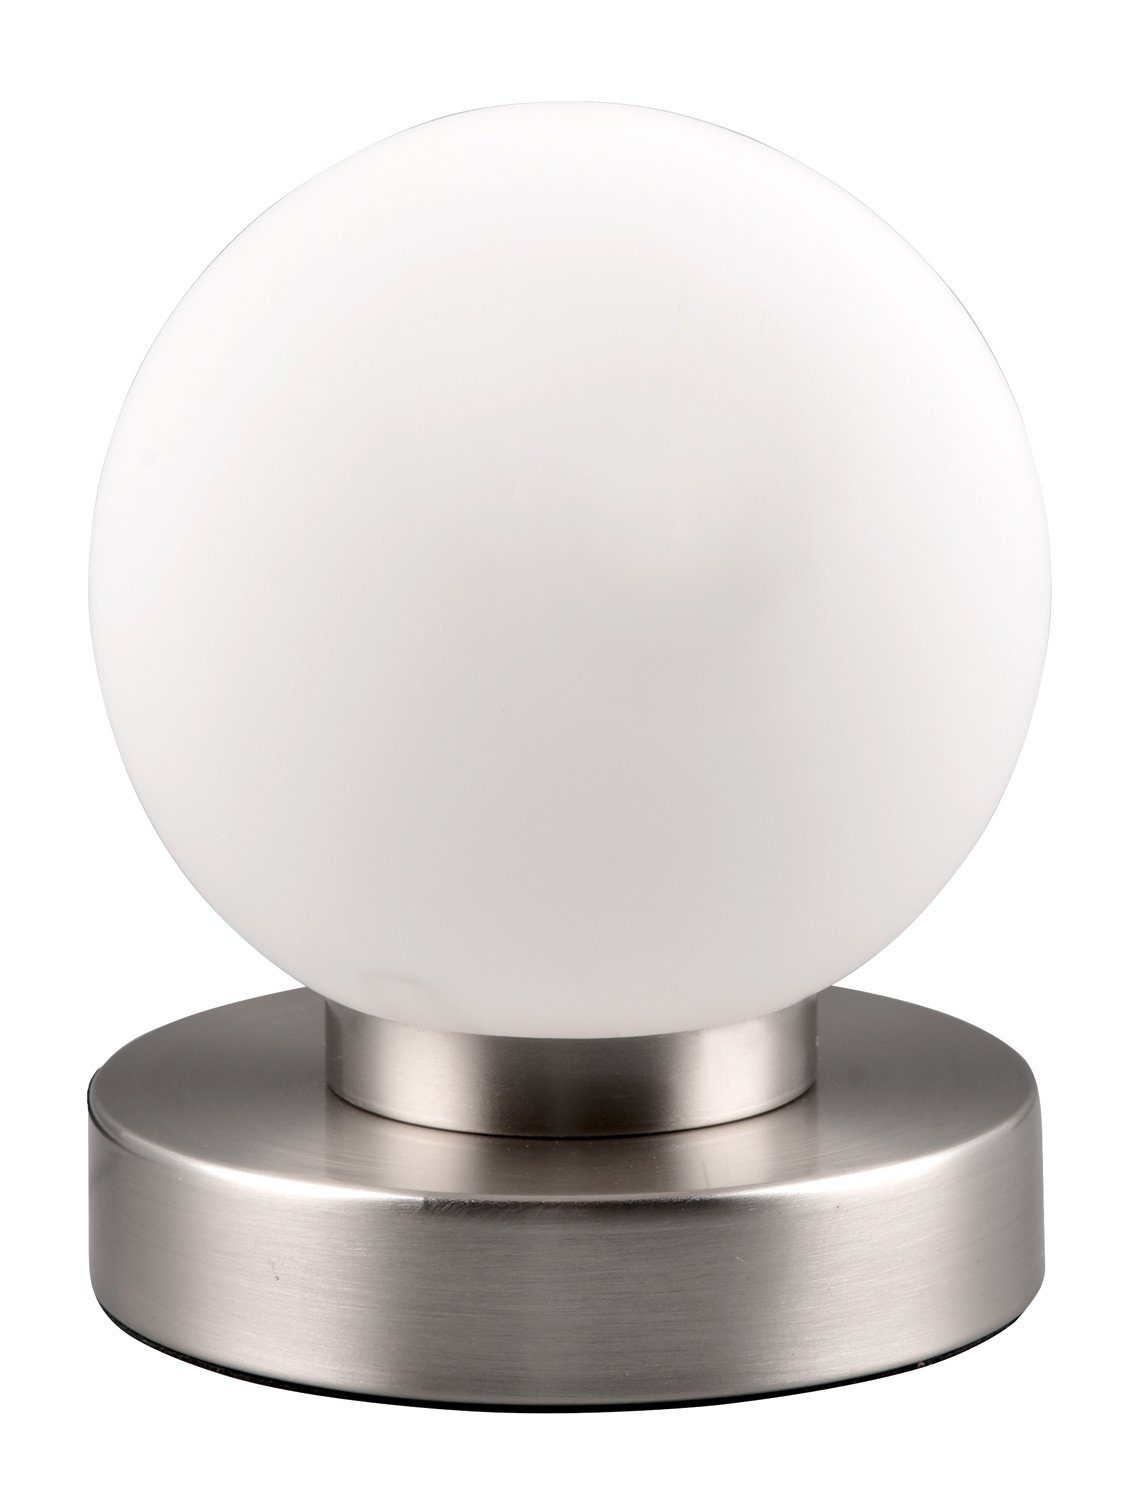 Reality Leuchten Tischleuchte PRESTON, 1-flammig, Weiß, Glasschirm, H 15 cm, ohne Leuchtmittel, Metallgestell Nickelfarben matt, Tischlampe, Touchfunktion | Tischlampen